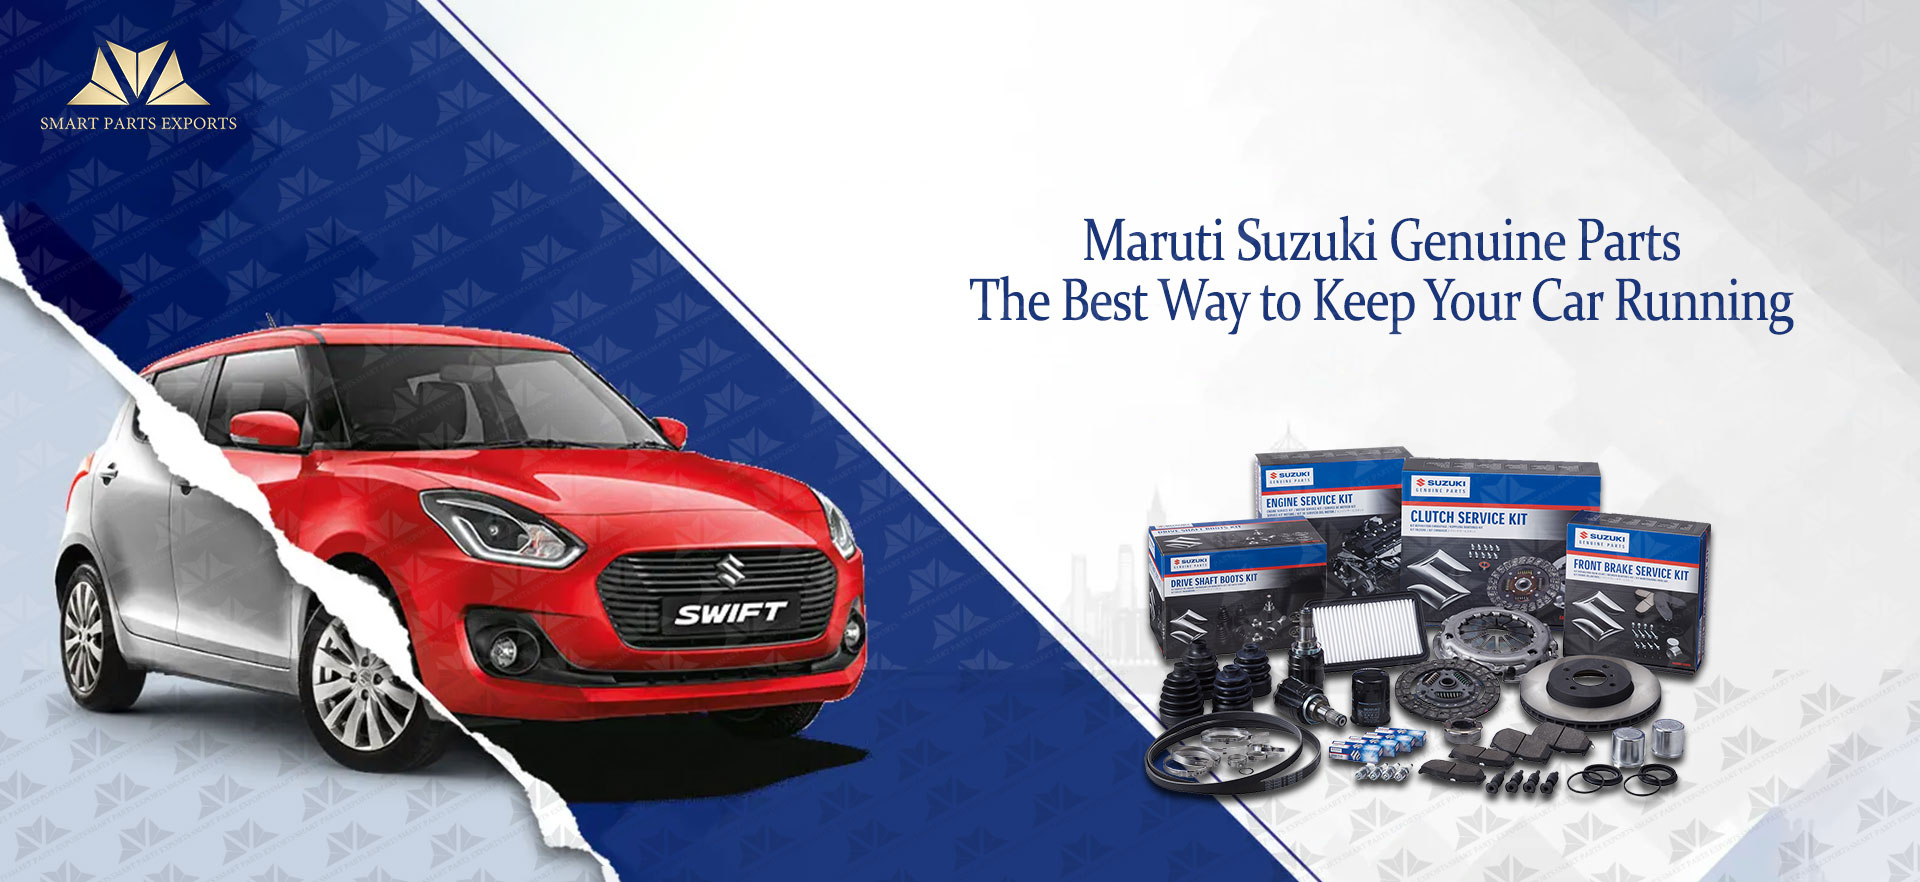 Maruti Suzuki Genuine Parts - The Best Way to Keep Your Car Running